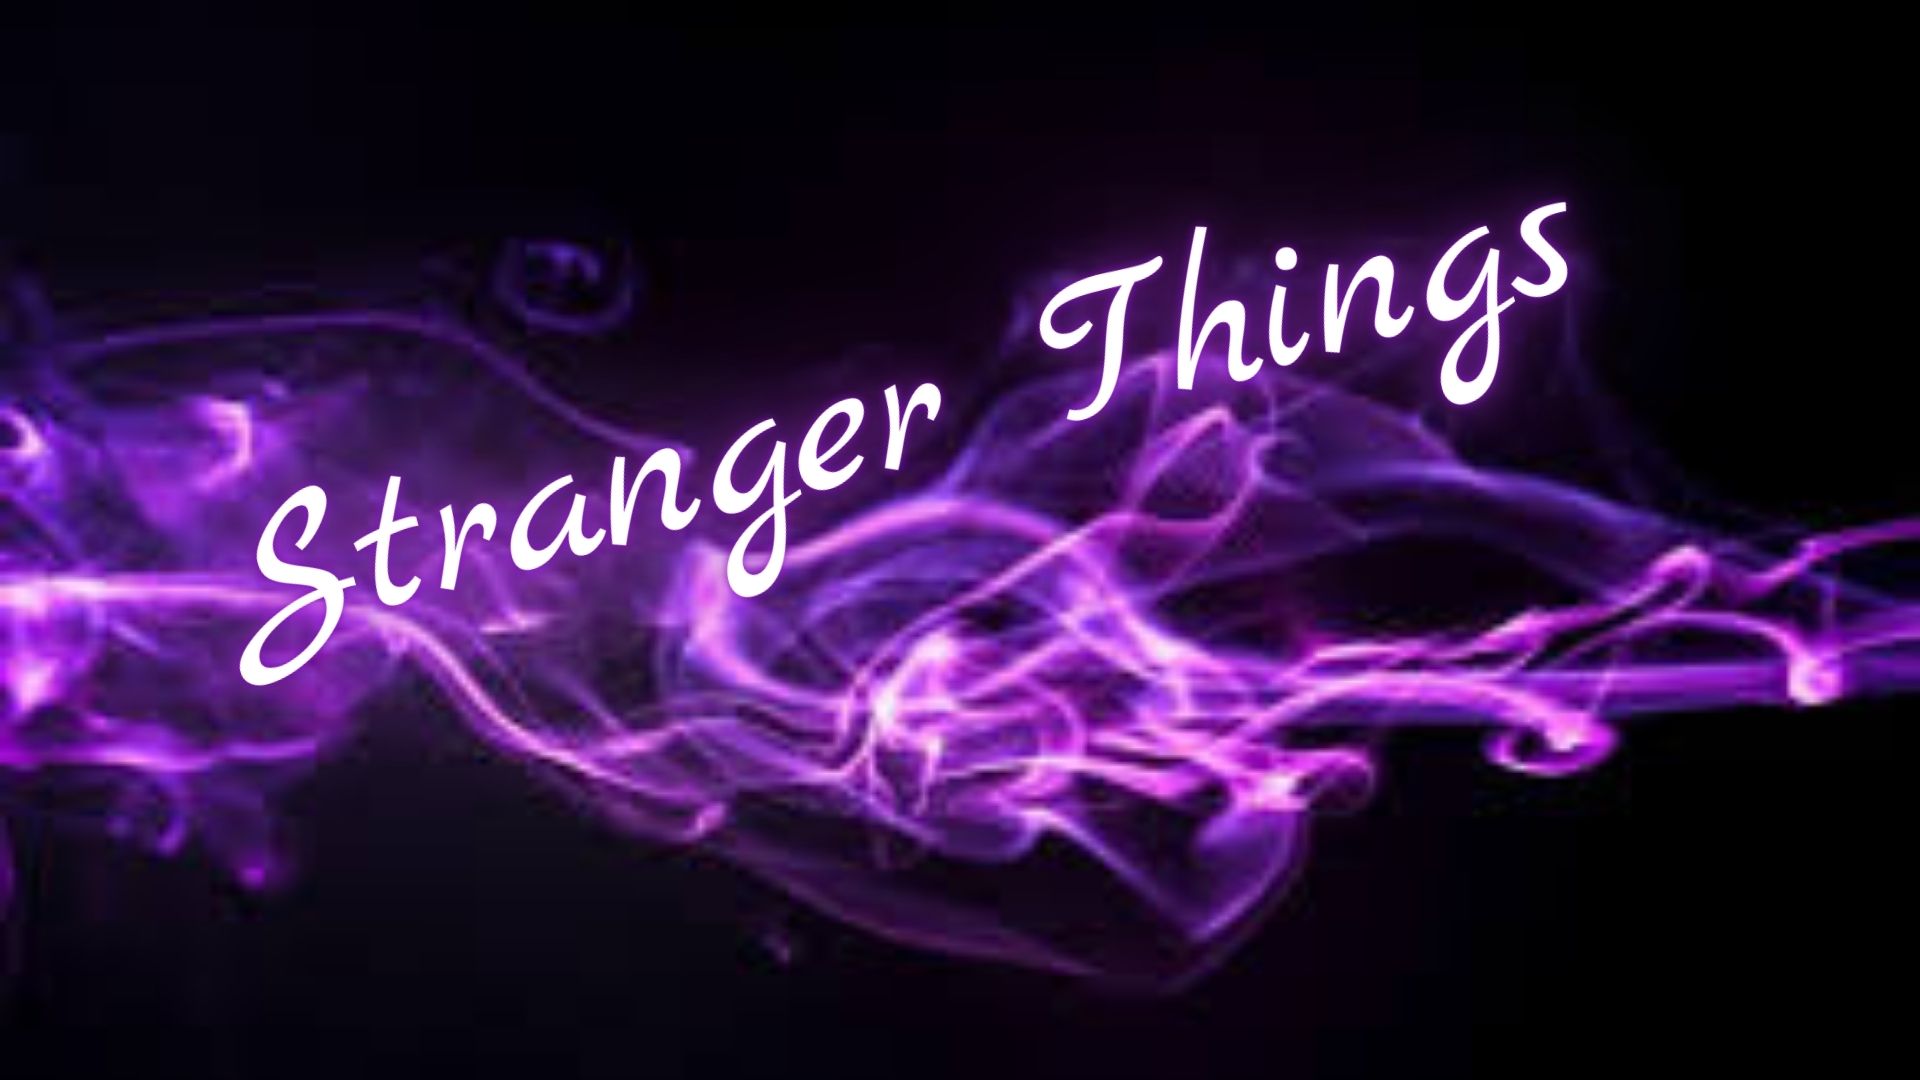 Саундтрек из сериала "Очень странные дела" (OST Stranger Things)